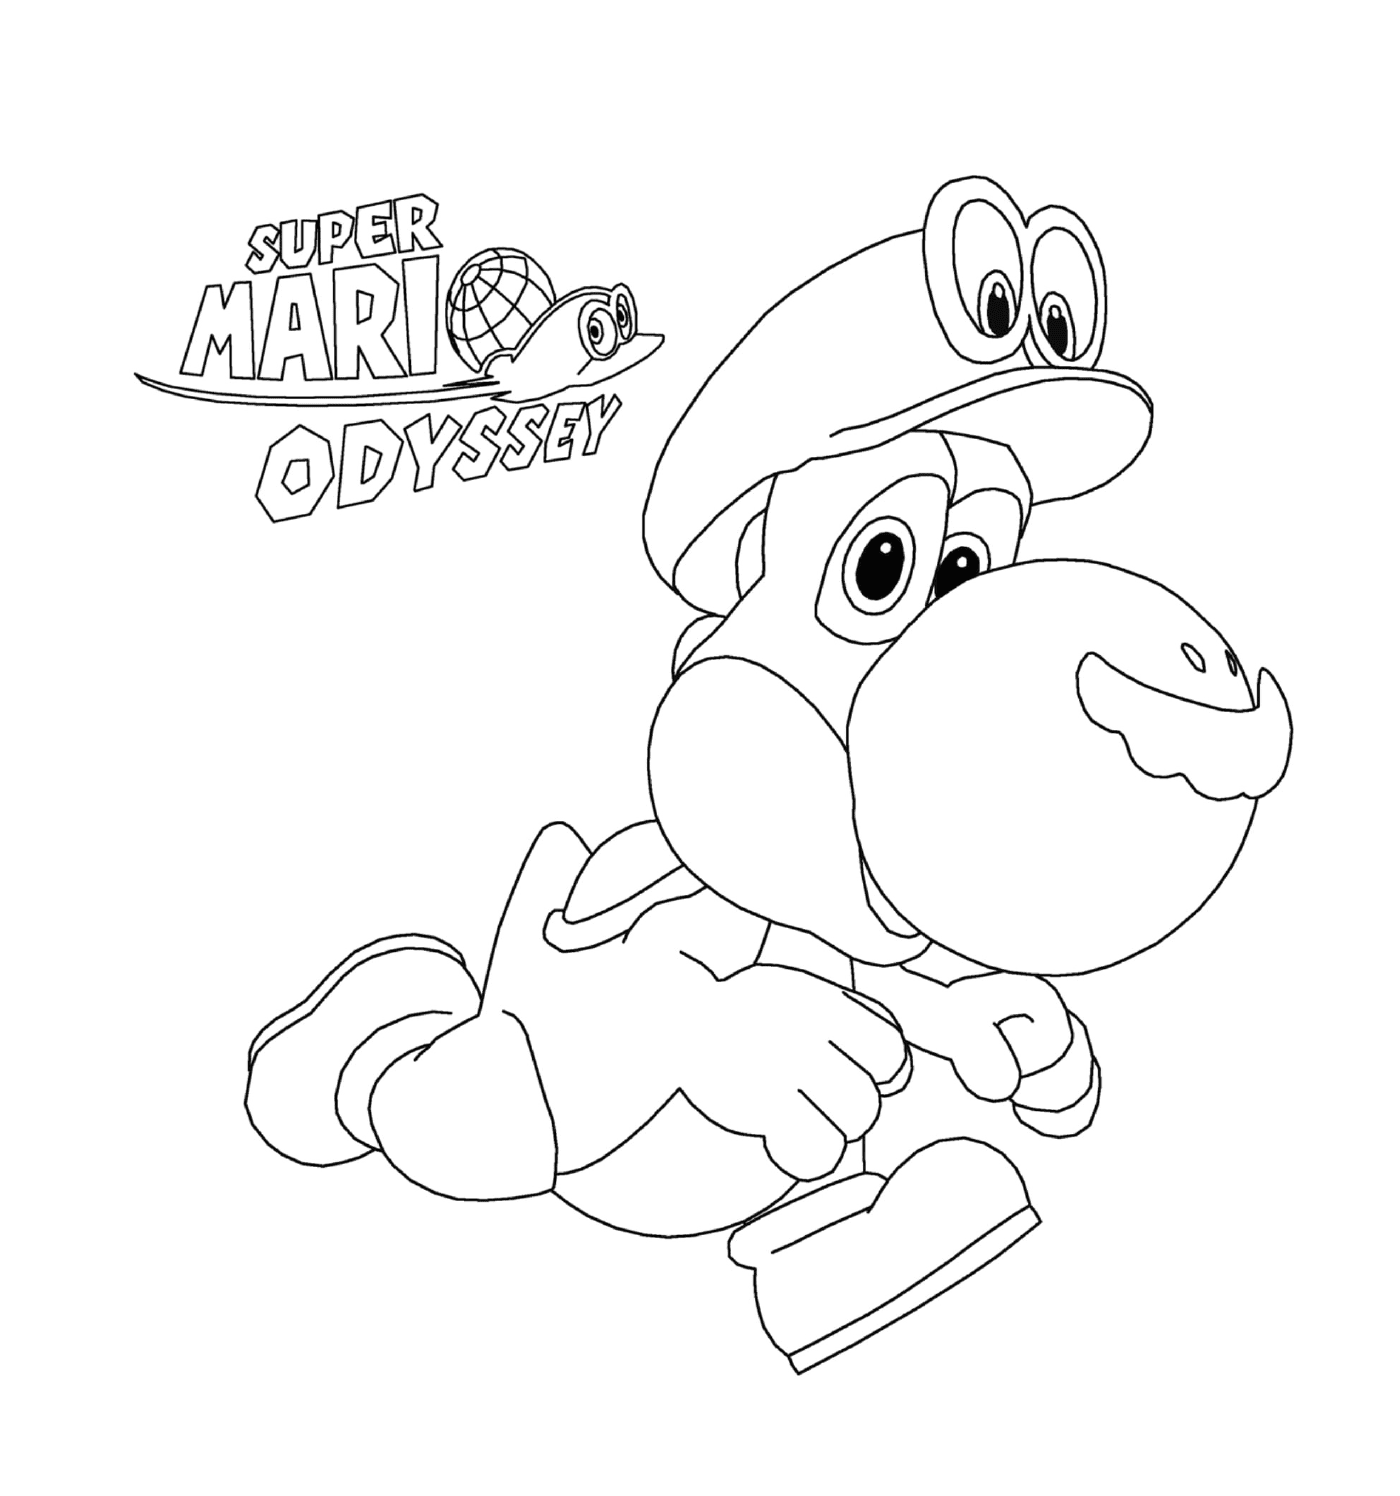  Super Mario Odyssey con Yoshi da Nintendo 